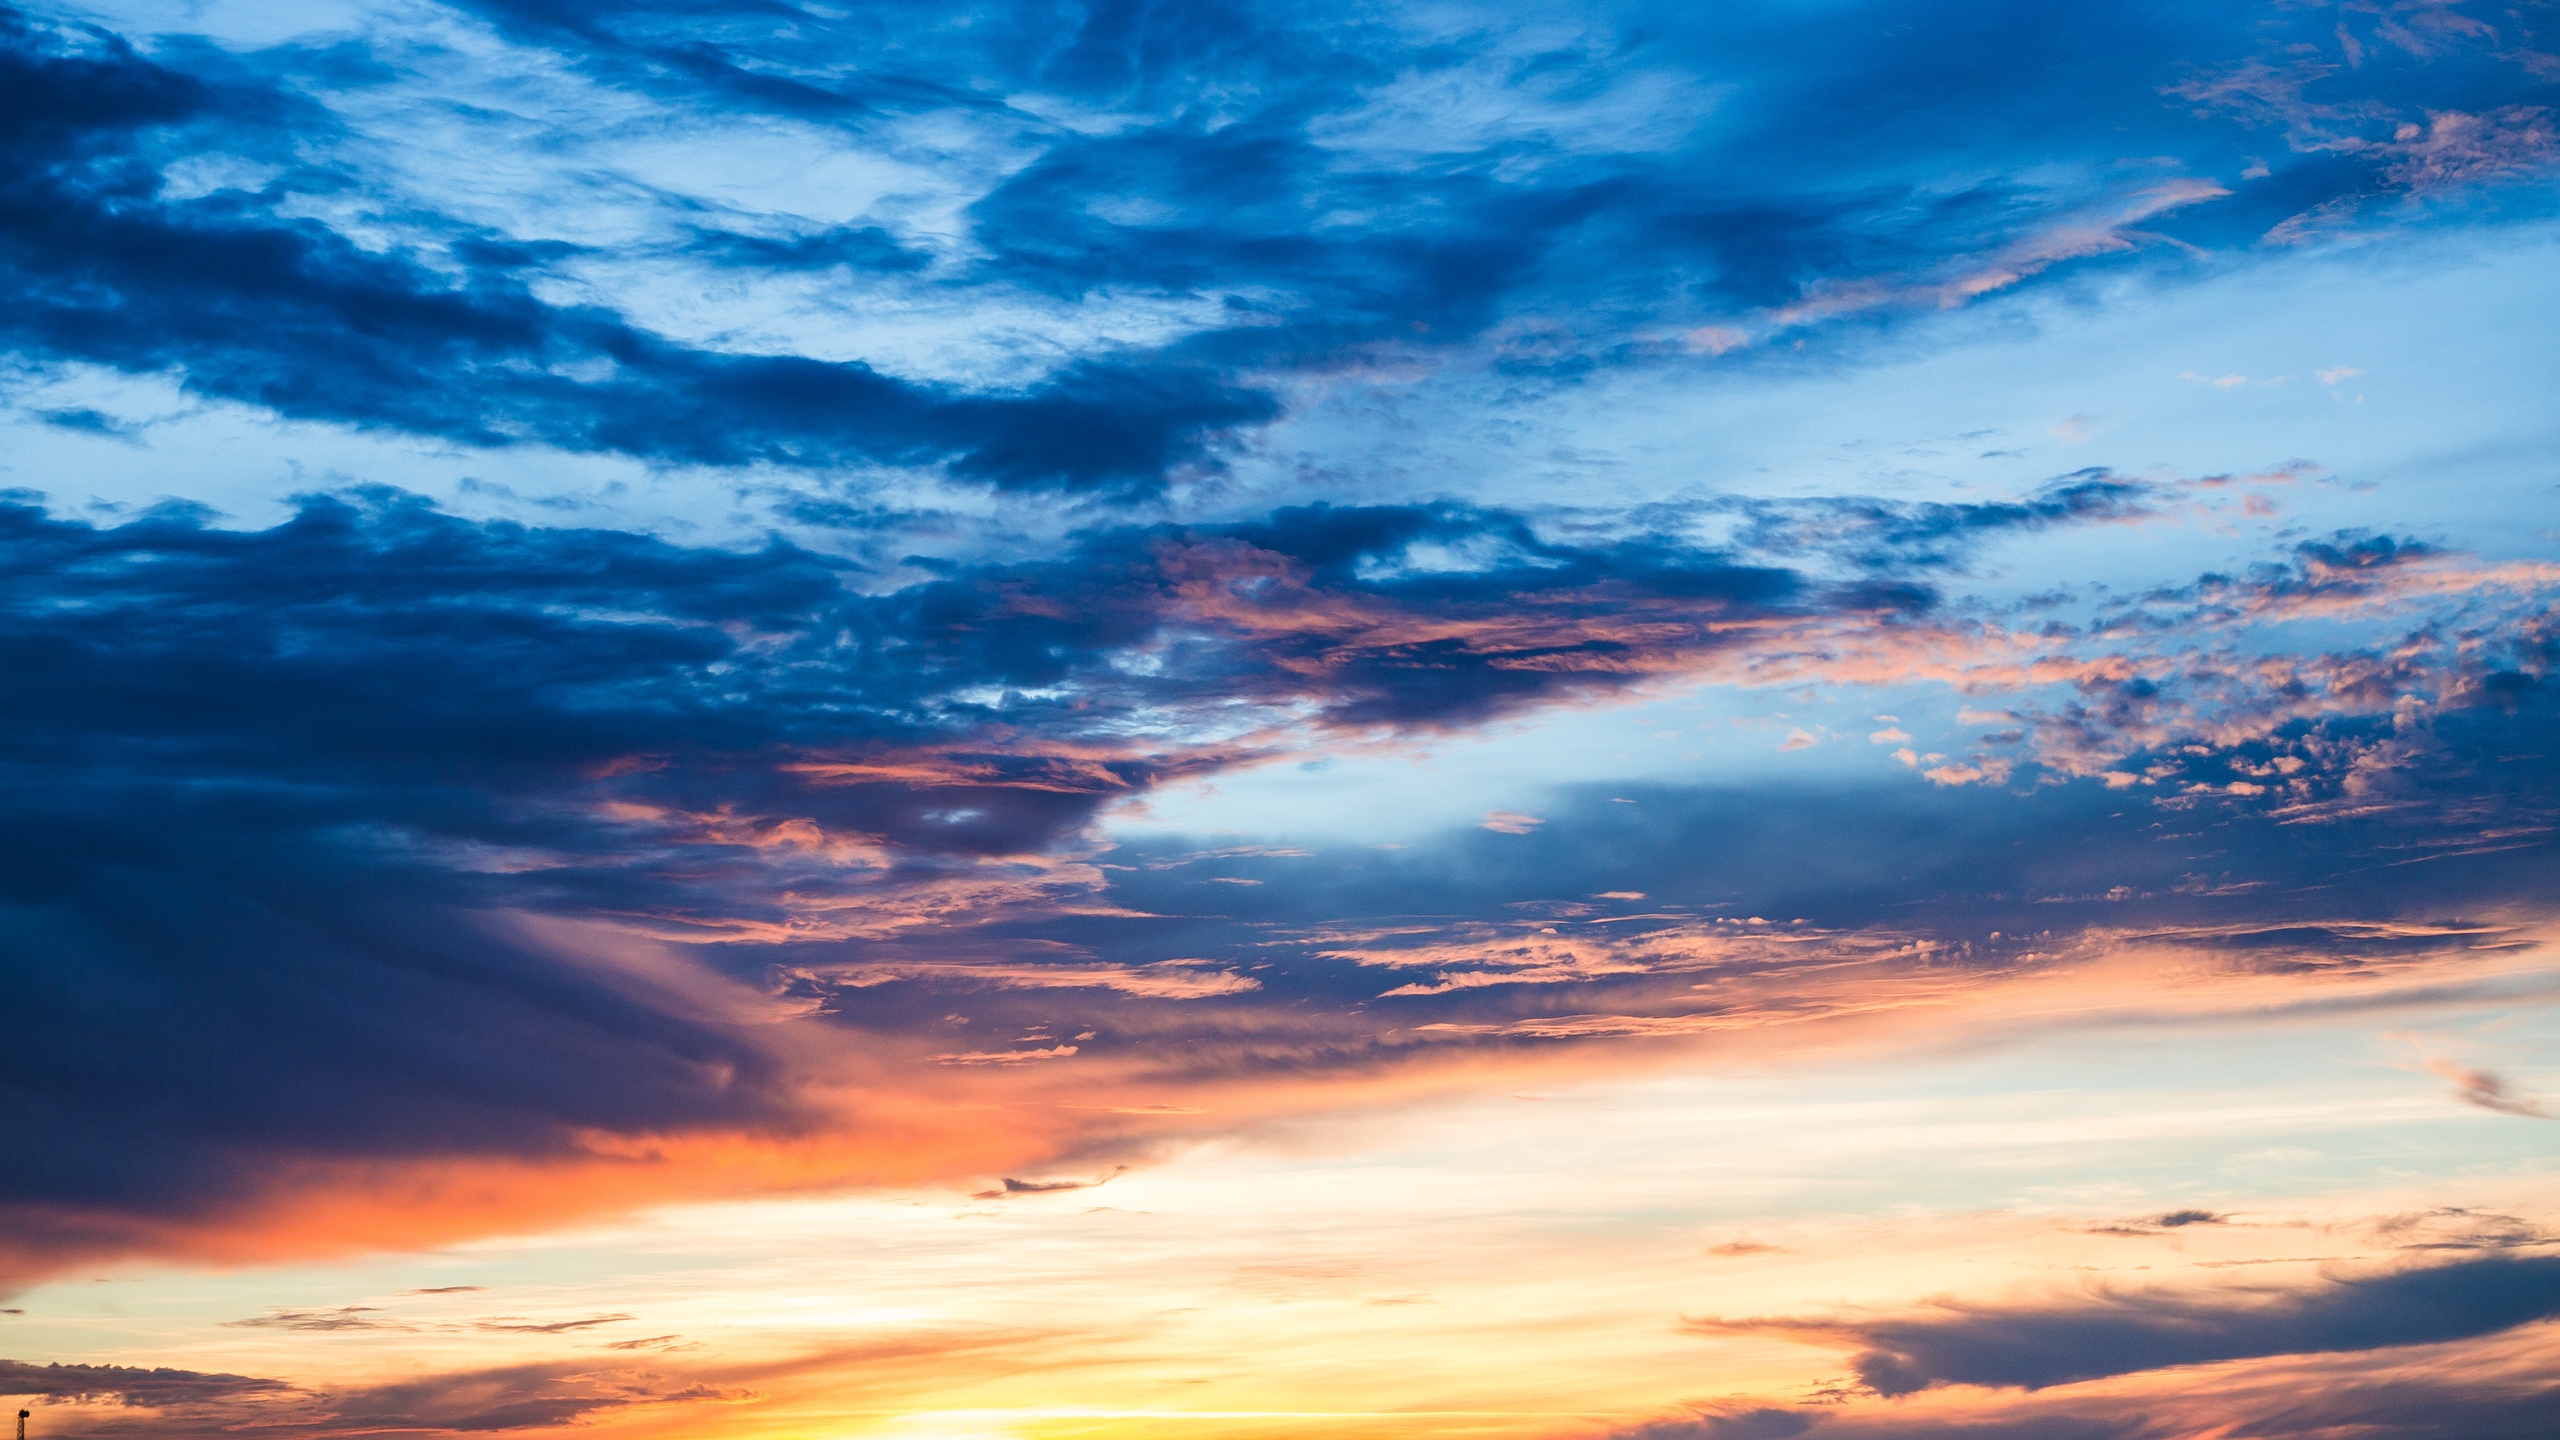 Download wallpaper 2560x1440 clouds, sunset, sky widescreen